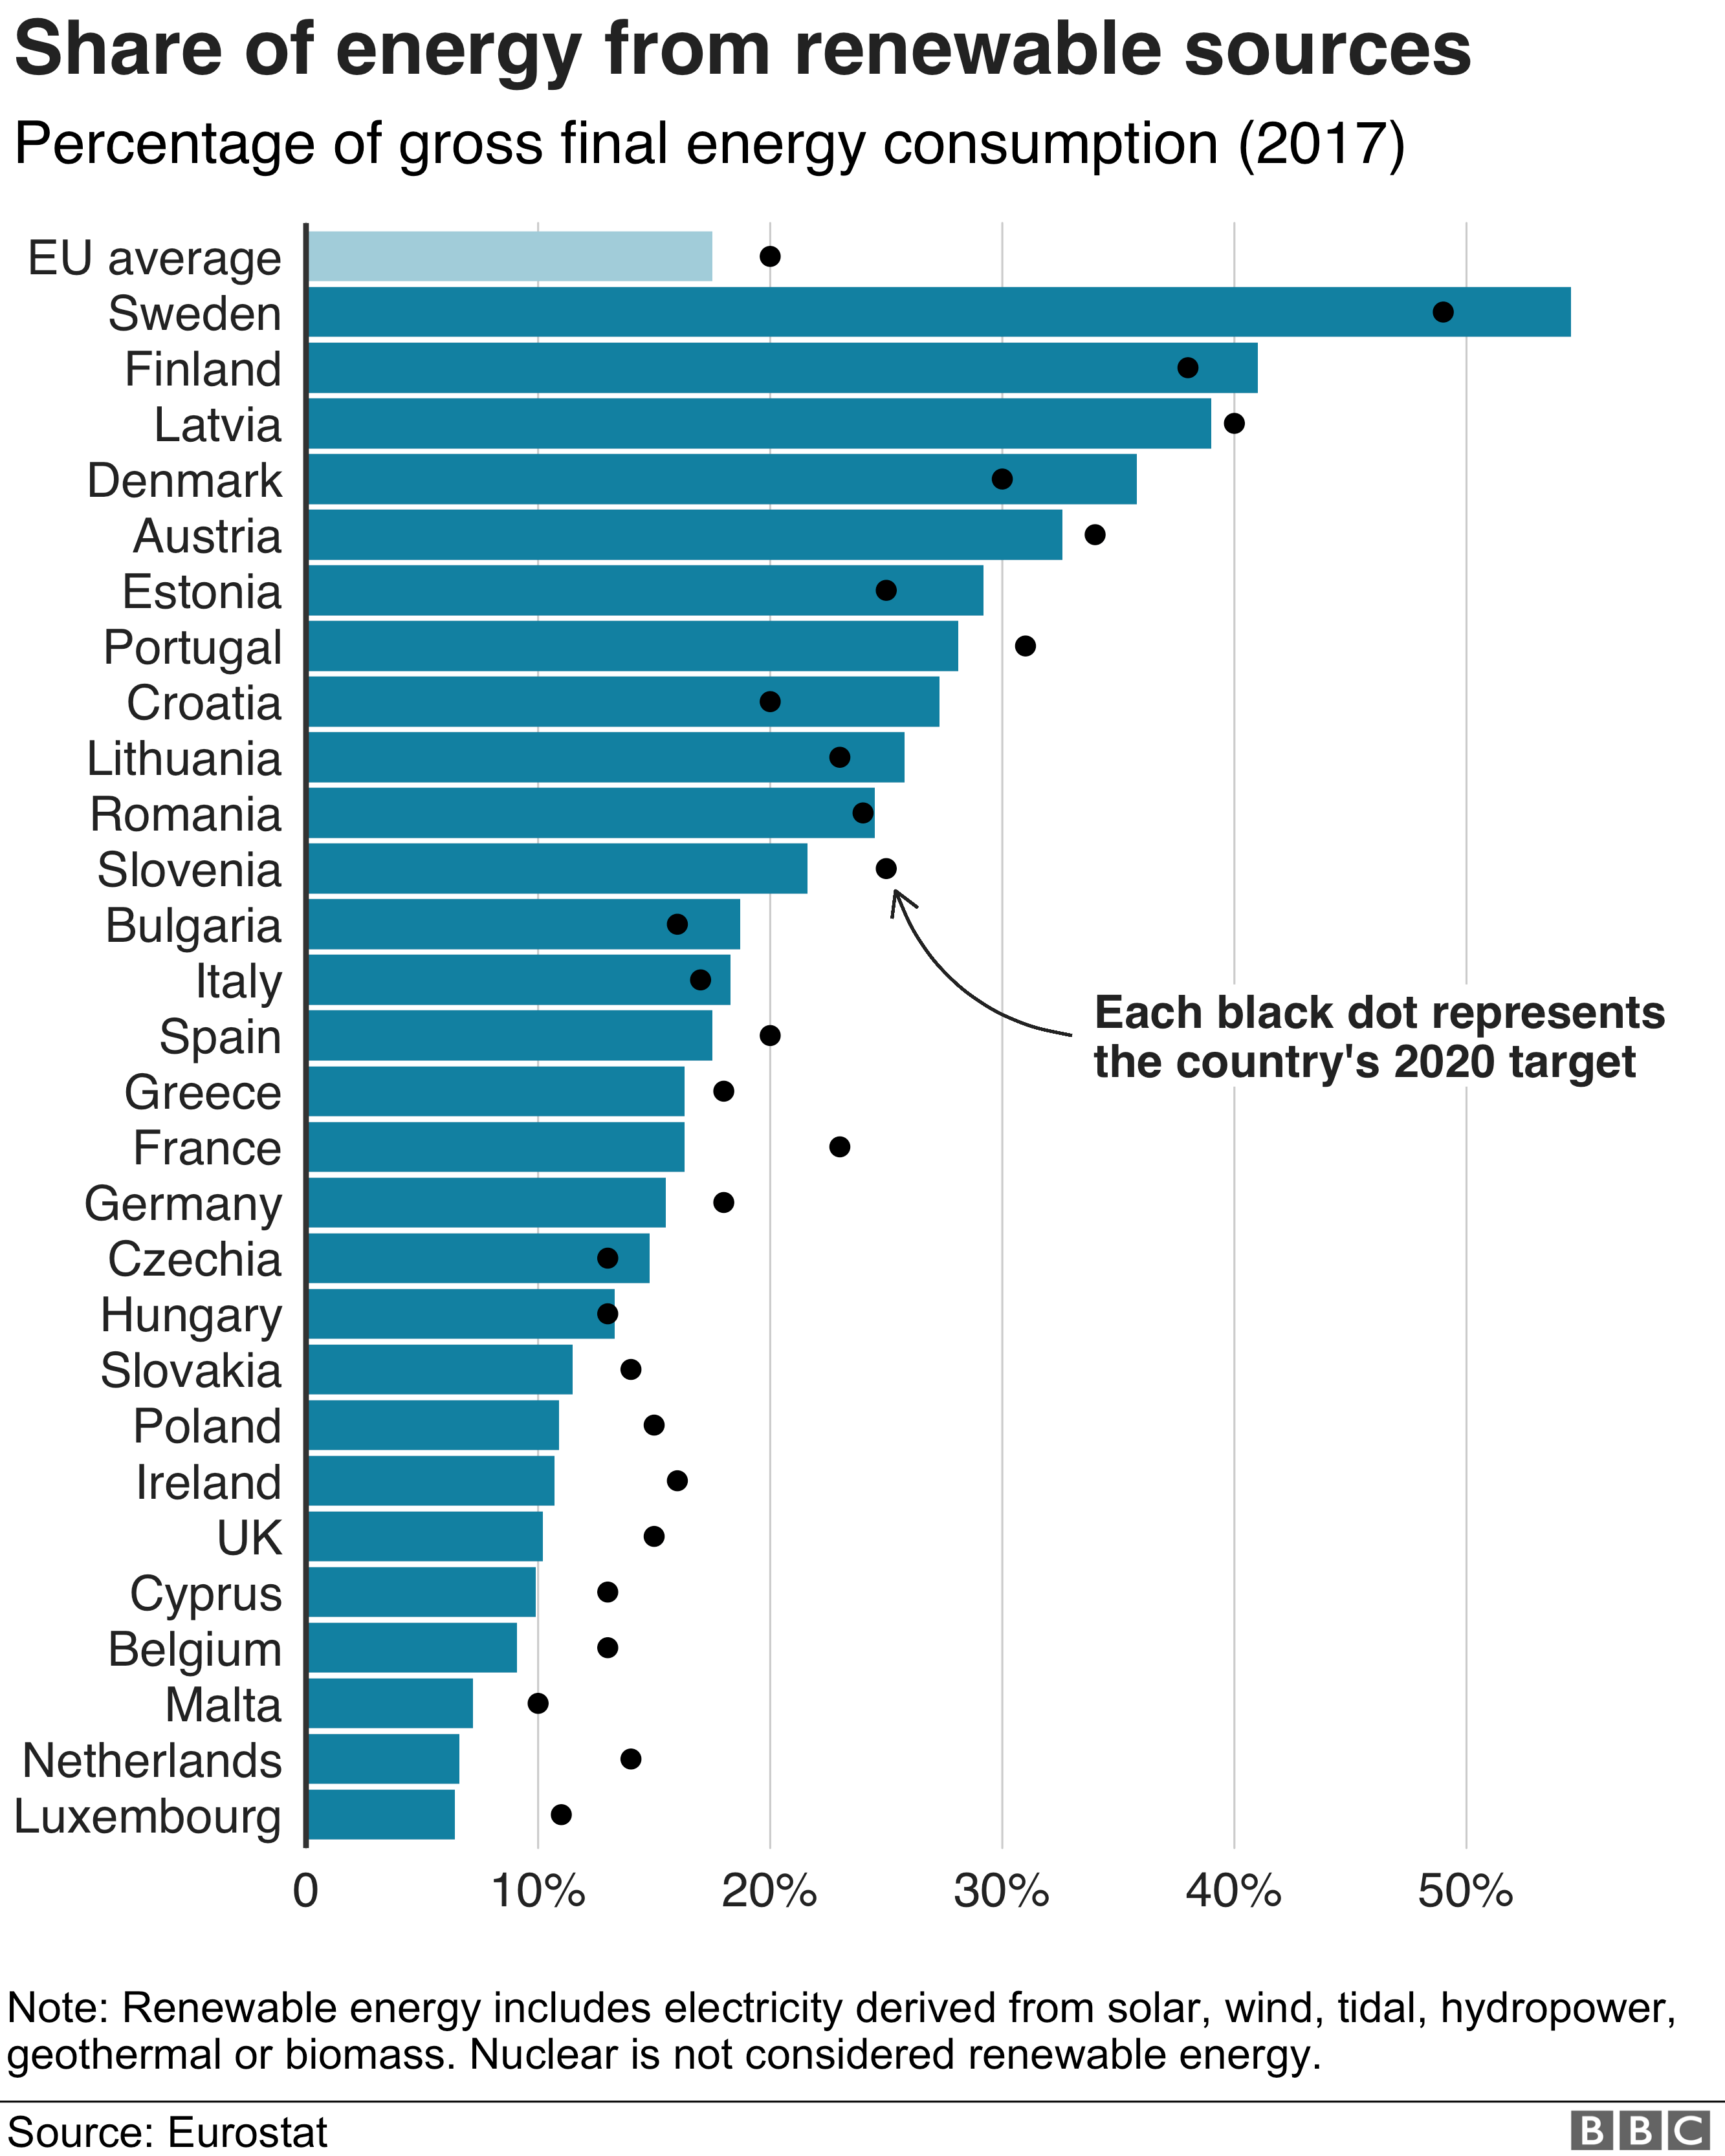 Использование возобновляемых источников энергии странами-членами ЕС - графика